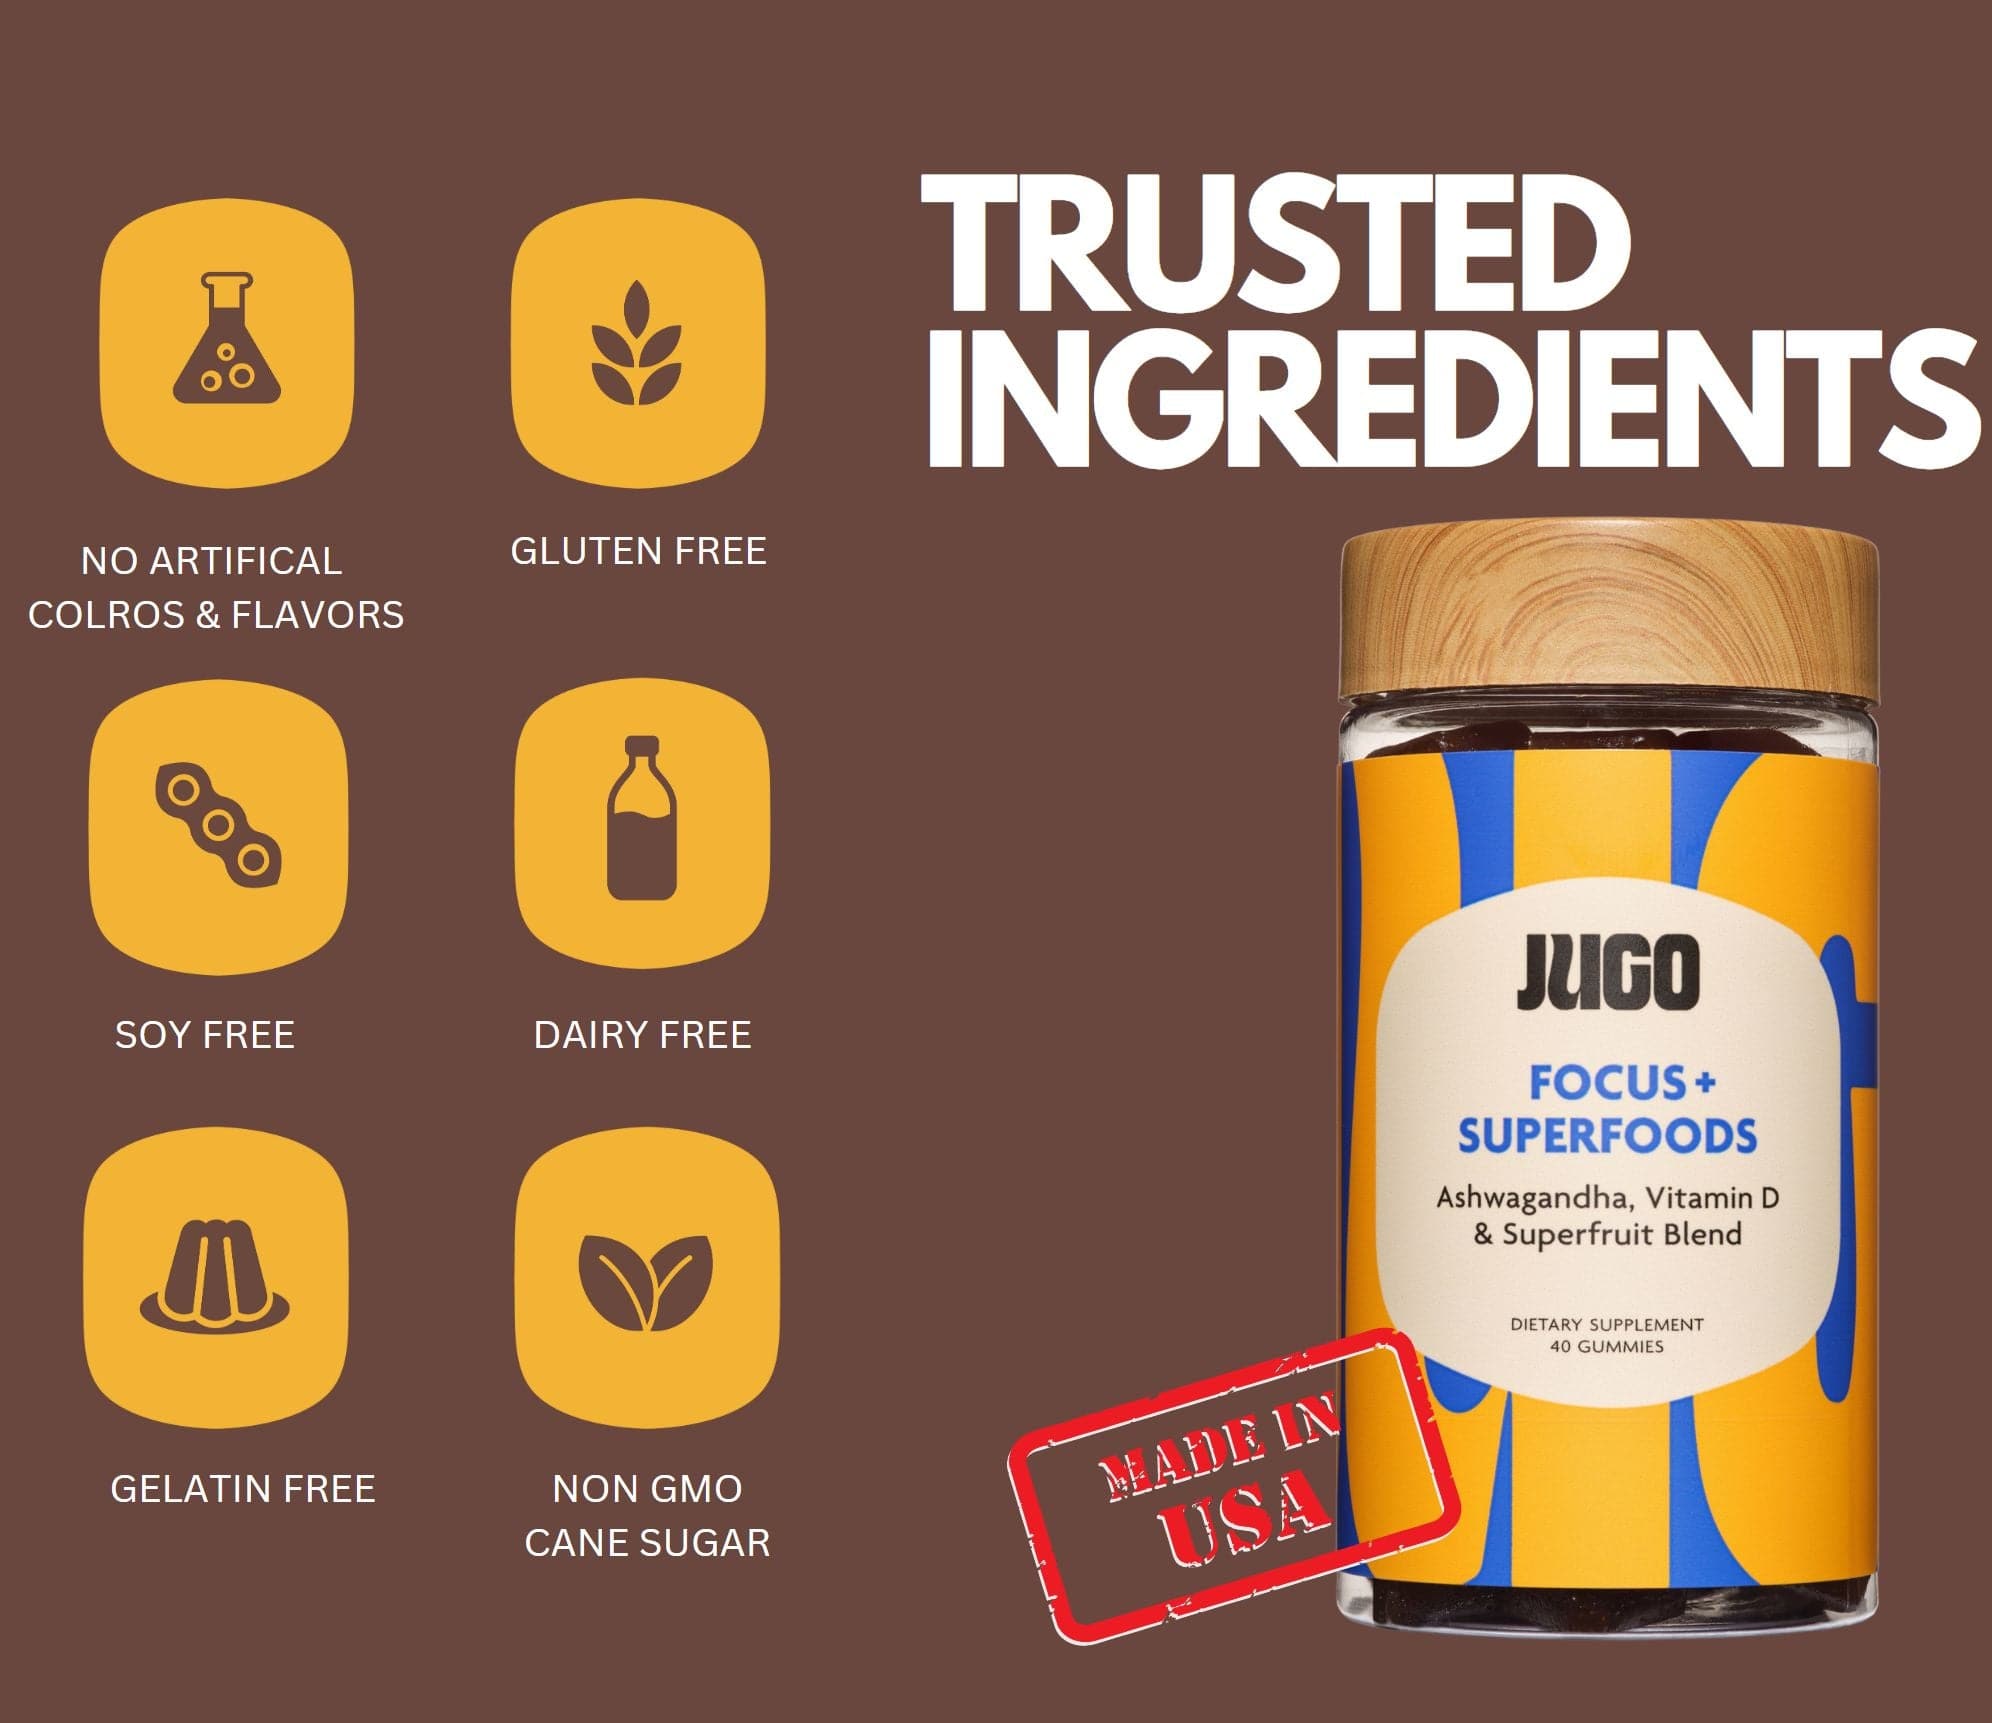 Trusted ingredients in JUGO FOCUS + SUPERFOODS gummies